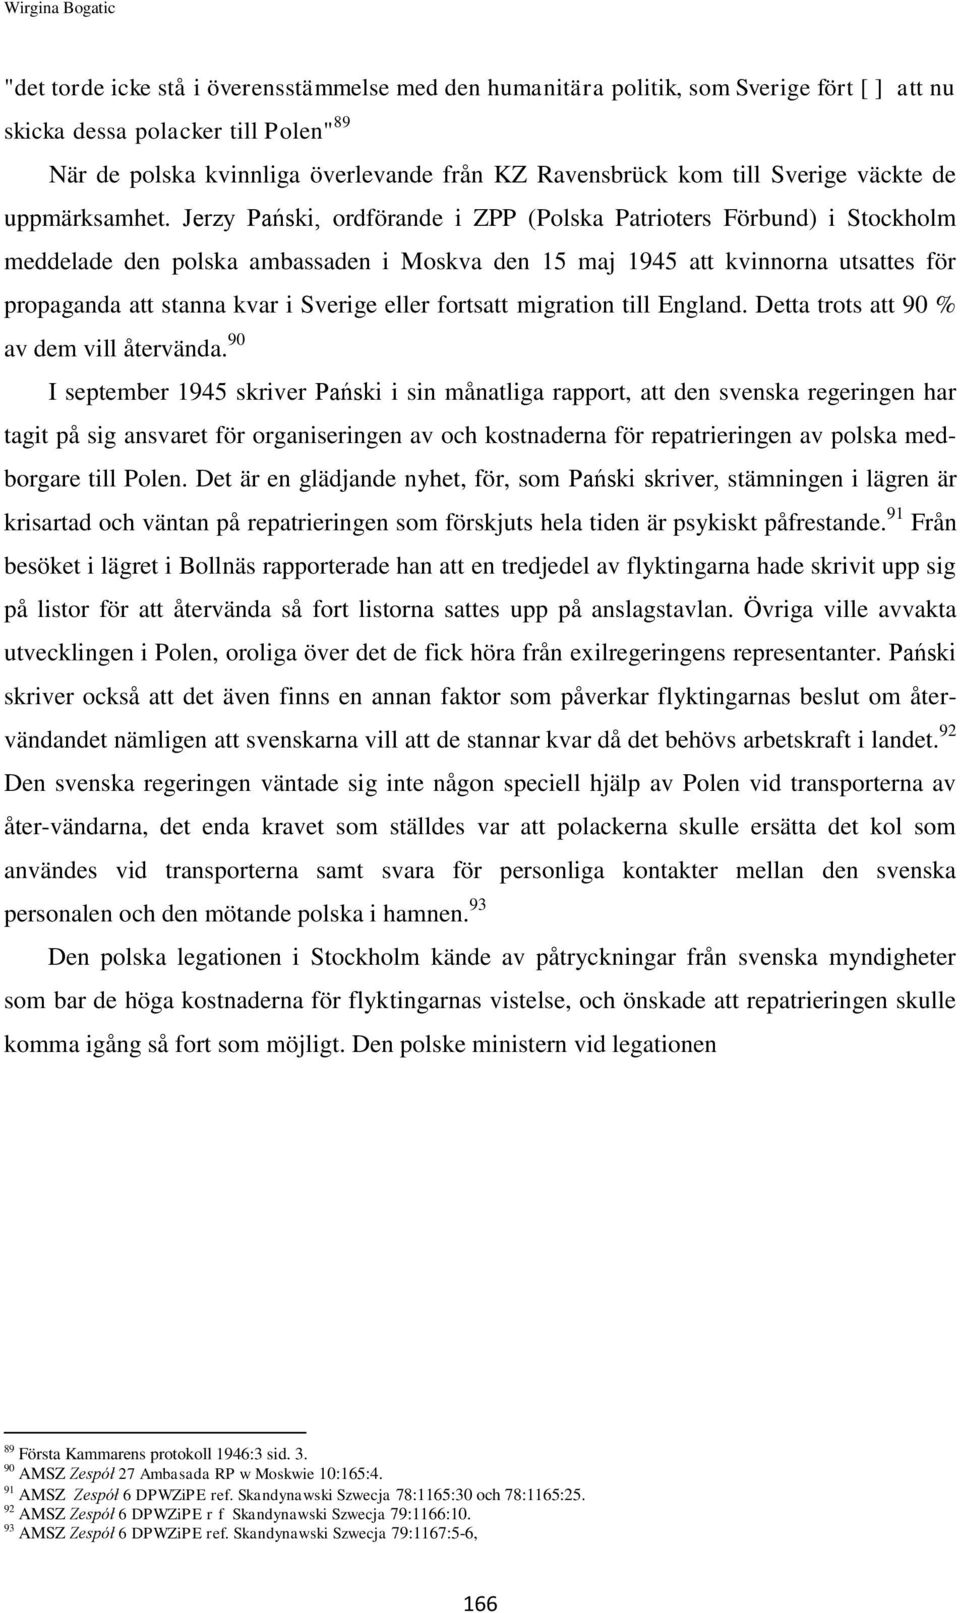 Jerzy Pański, ordförande i ZPP (Polska Patrioters Förbund) i Stockholm meddelade den polska ambassaden i Moskva den 15 maj 1945 att kvinnorna utsattes för propaganda att stanna kvar i Sverige eller